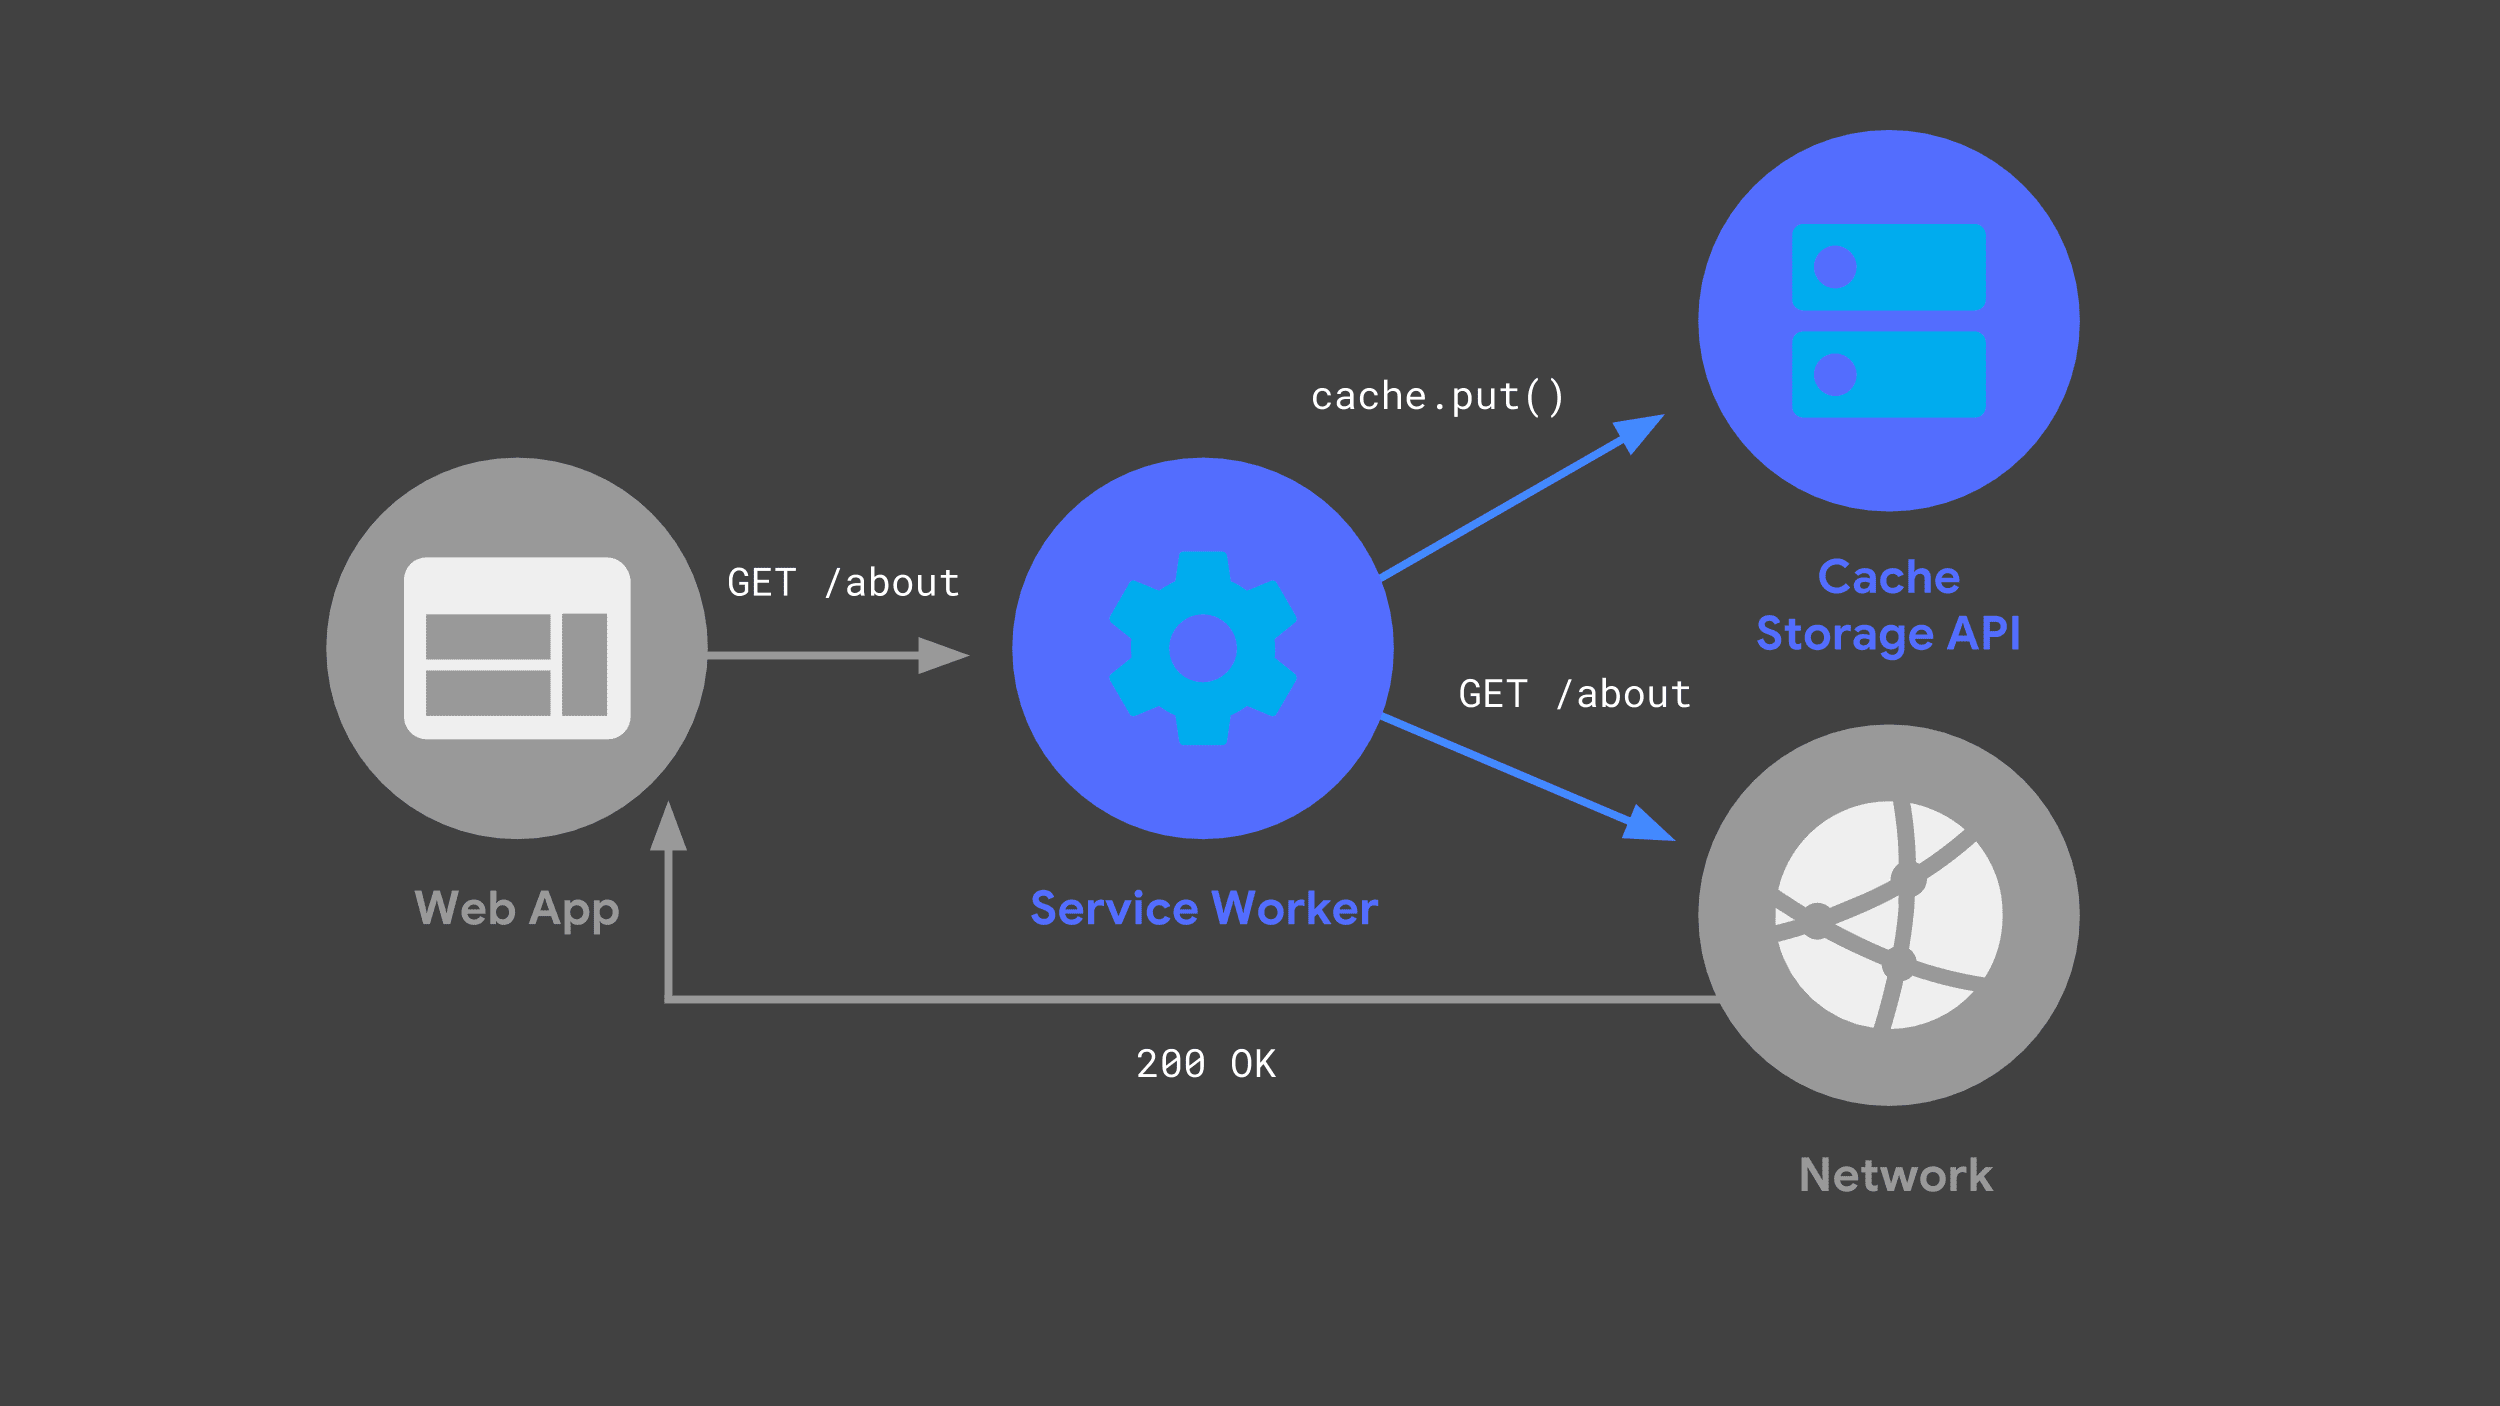 یک سرویس دهنده که از API حافظه کش برای ذخیره یک کپی از پاسخ شبکه استفاده می کند.